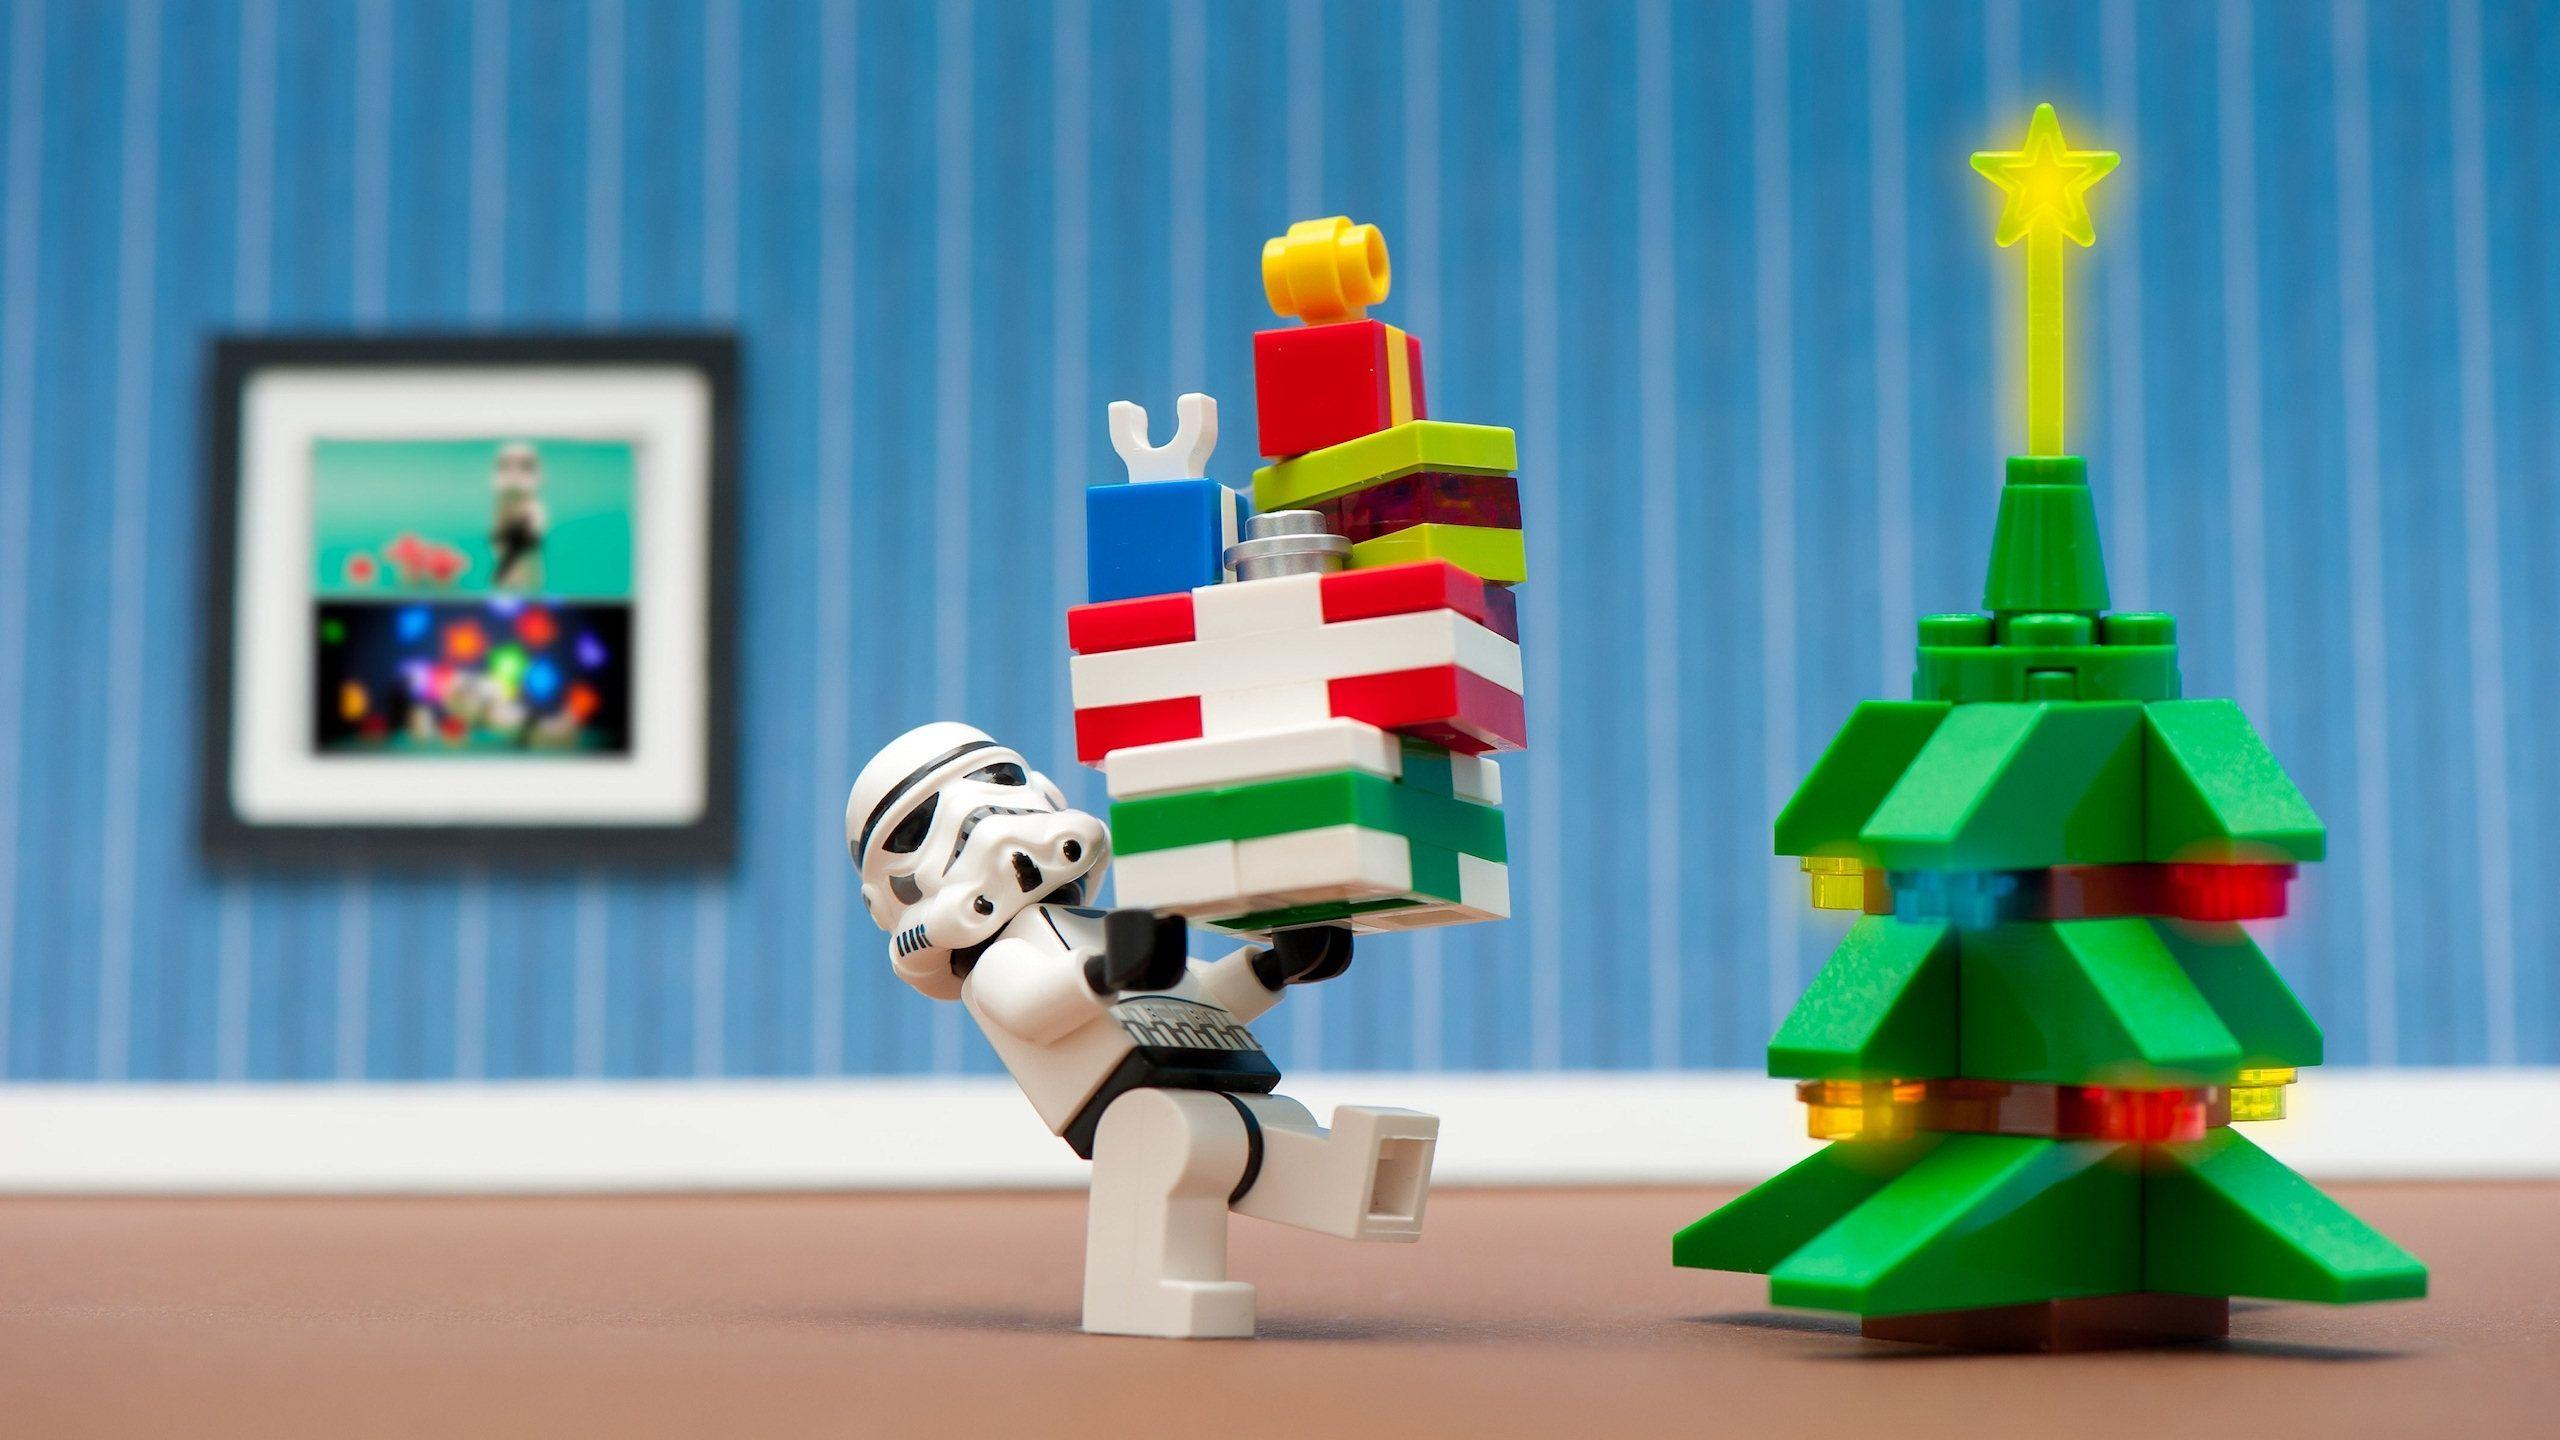 Hãy ăn mừng mùa Giáng Sinh vui vẻ với các hình nền Lego Giáng sinh lung linh và đáng yêu. Với các hình ảnh sặc sỡ này, bạn sẽ nhận thấy được sự kết nối và truyền tải thông điệp về tình yêu và hòa bình.